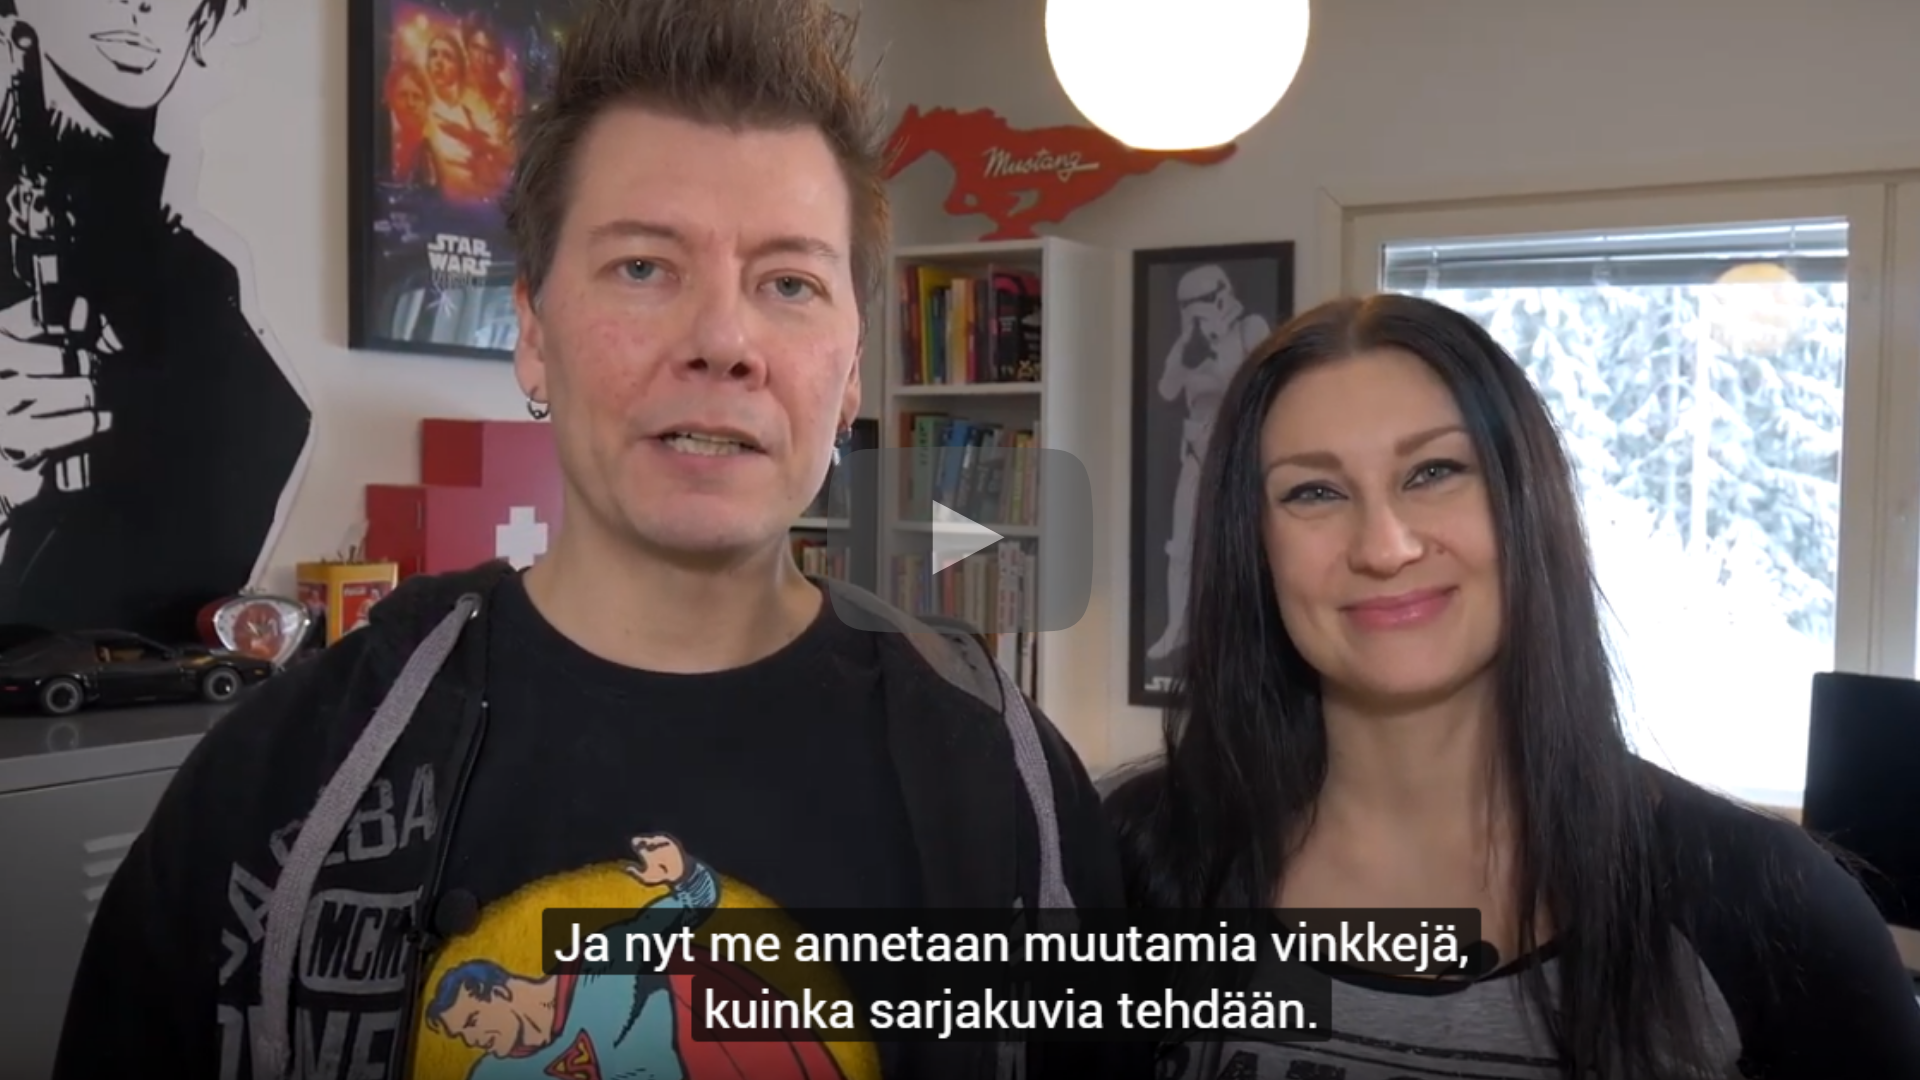 Kuva Marja Lappalaisesta ja Jarkko Vehniäisestä toimii linkkinä videoon.